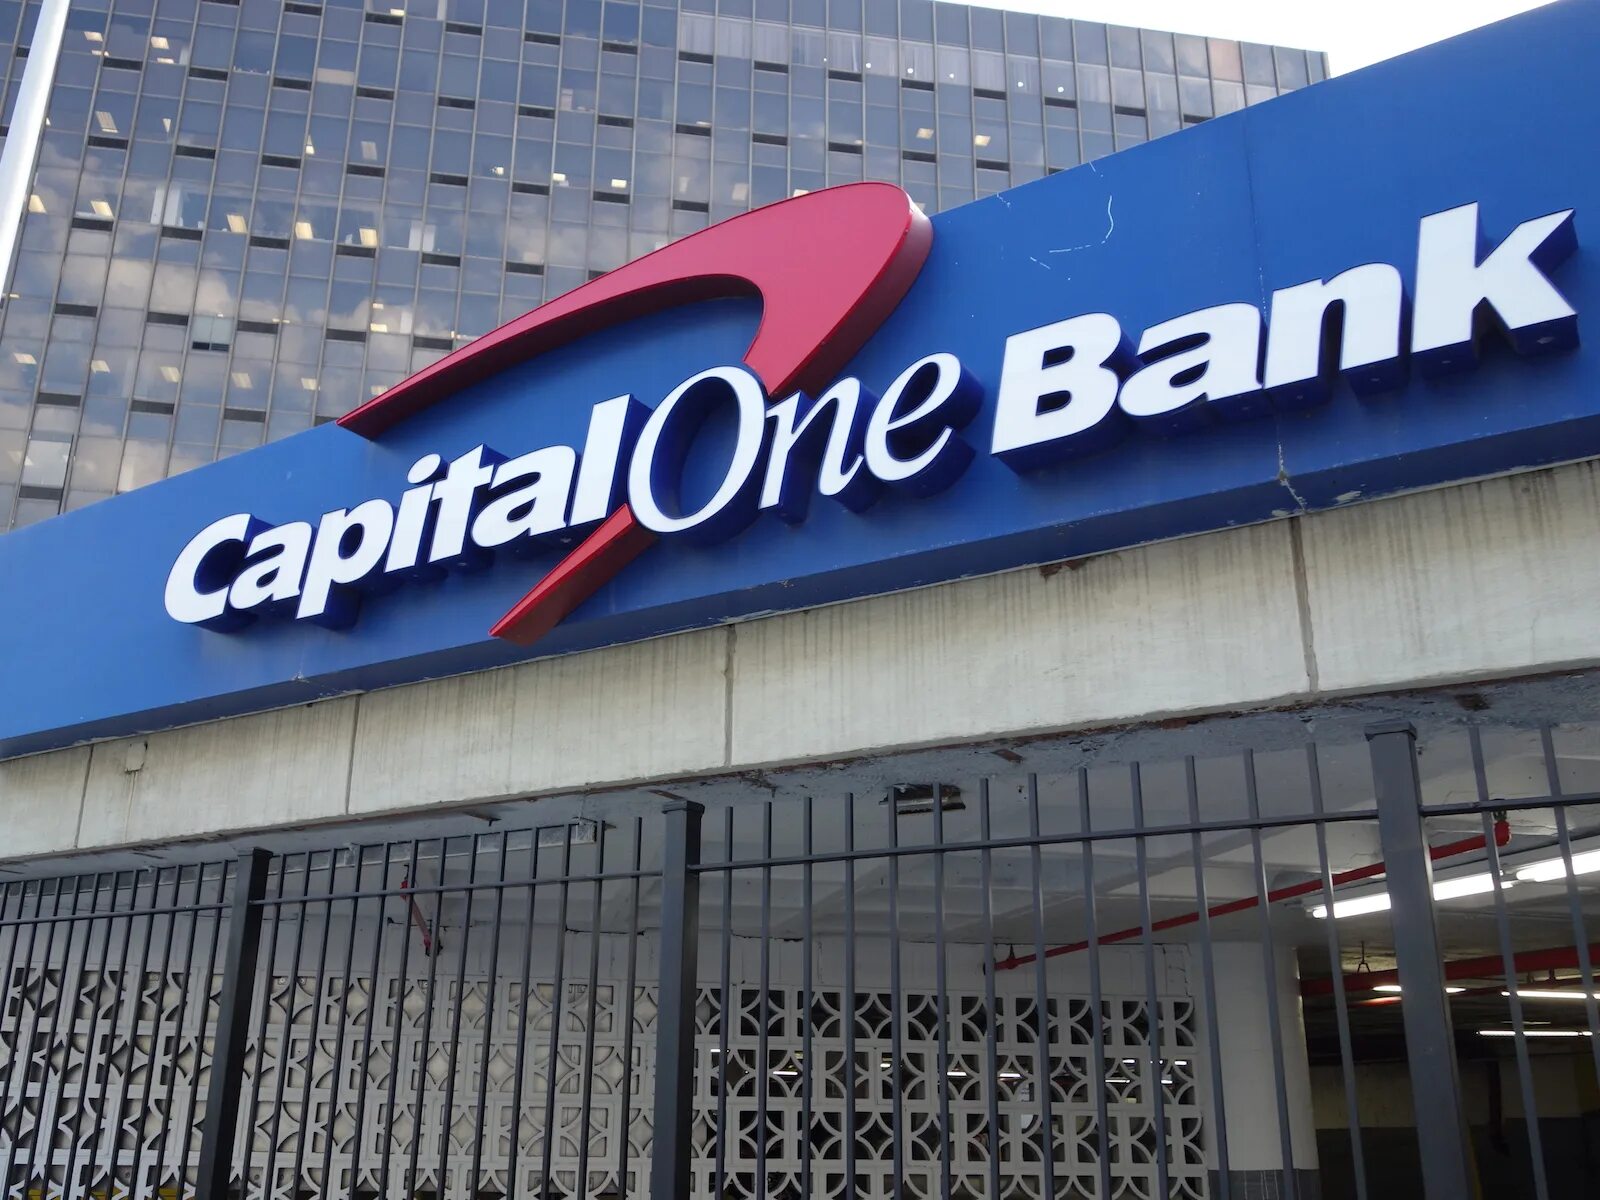 S one capital. Capital one. Капитал уан банк. Capital one Bank (USA), N.A.. Capital one logo.